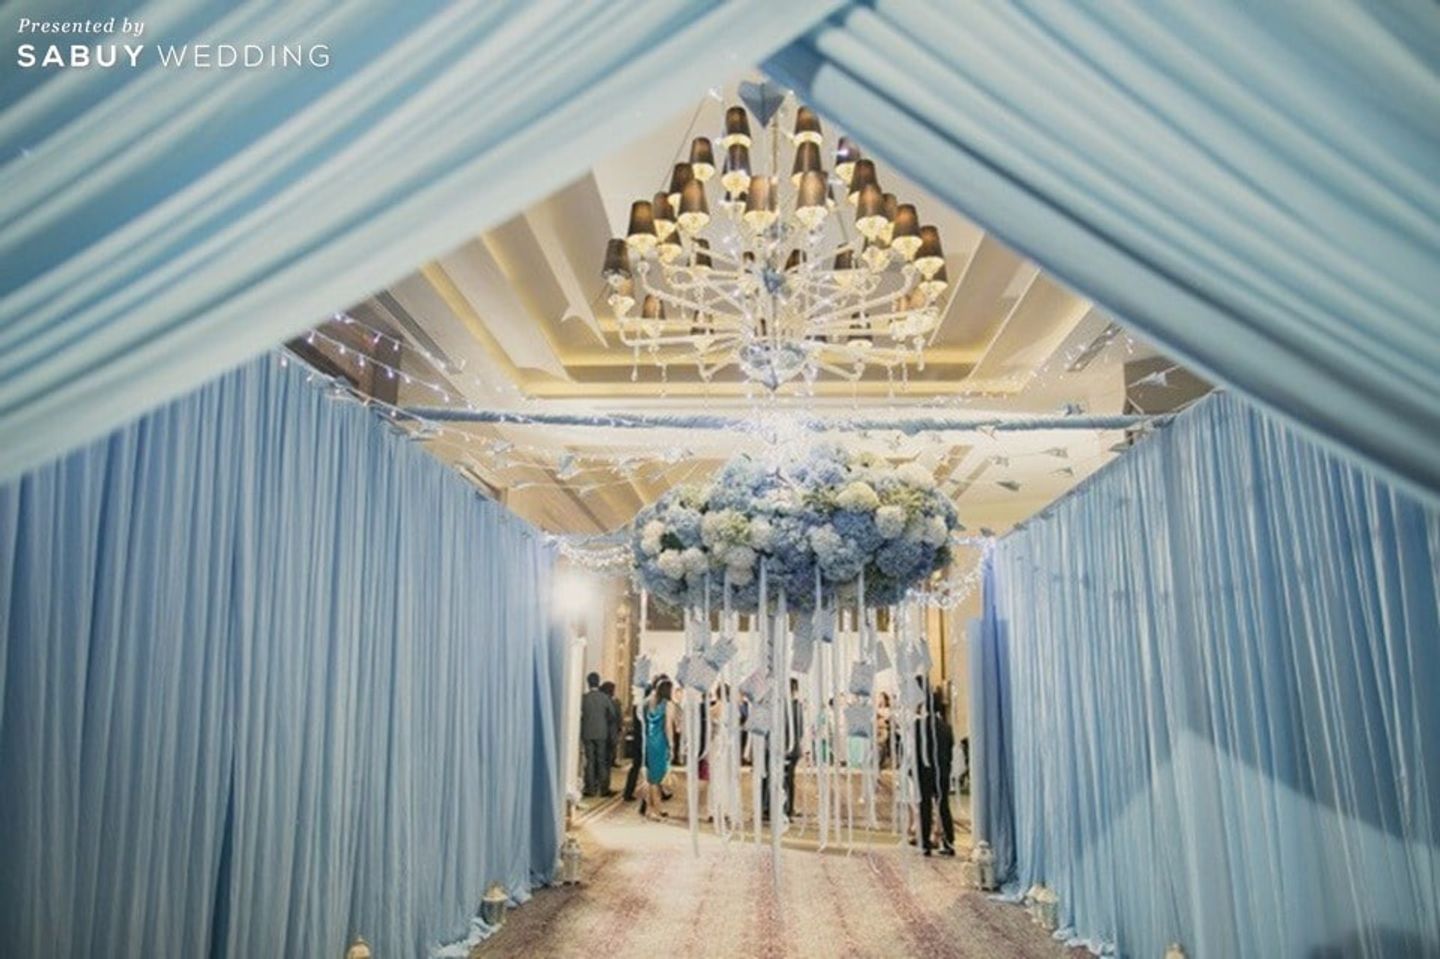 ตกแต่งงานแต่ง,จัดดอกไม้งานแต่ง,ธีมงานแต่ง รีวิวงานแต่งธีมรัสติกคันทรี่ ดูดีด้วยสีฟ้าอมเทา @Siam Kempinski Bangkok